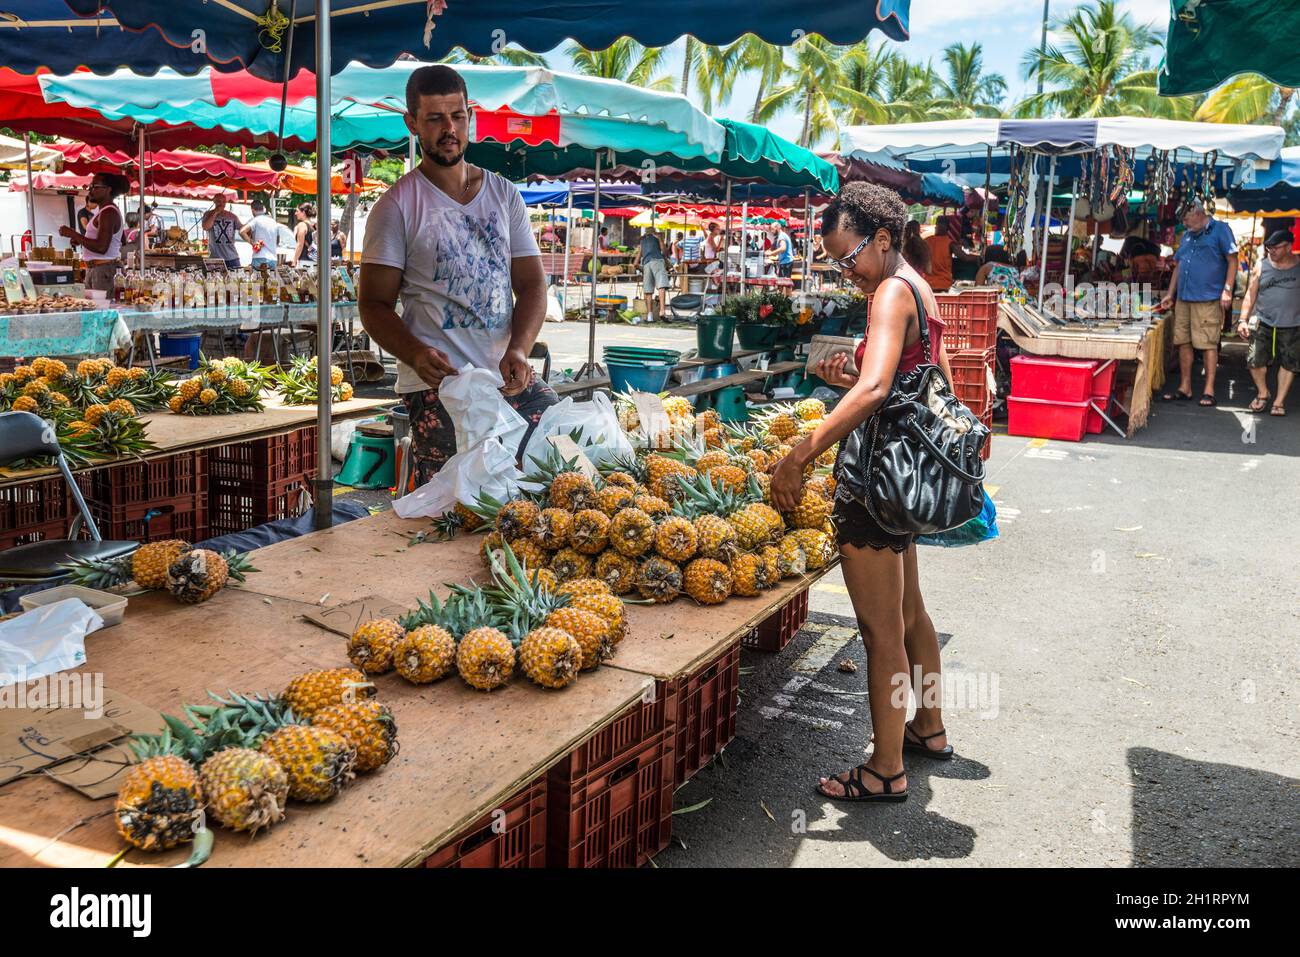 Saint-Paul, Réunion, Frankreich - 24. Dezember 2015: Anbieter frisches Obst Ananas auf einem lokalen Markt in Saint Paul auf der Insel La Réunion (Fran Stockfoto